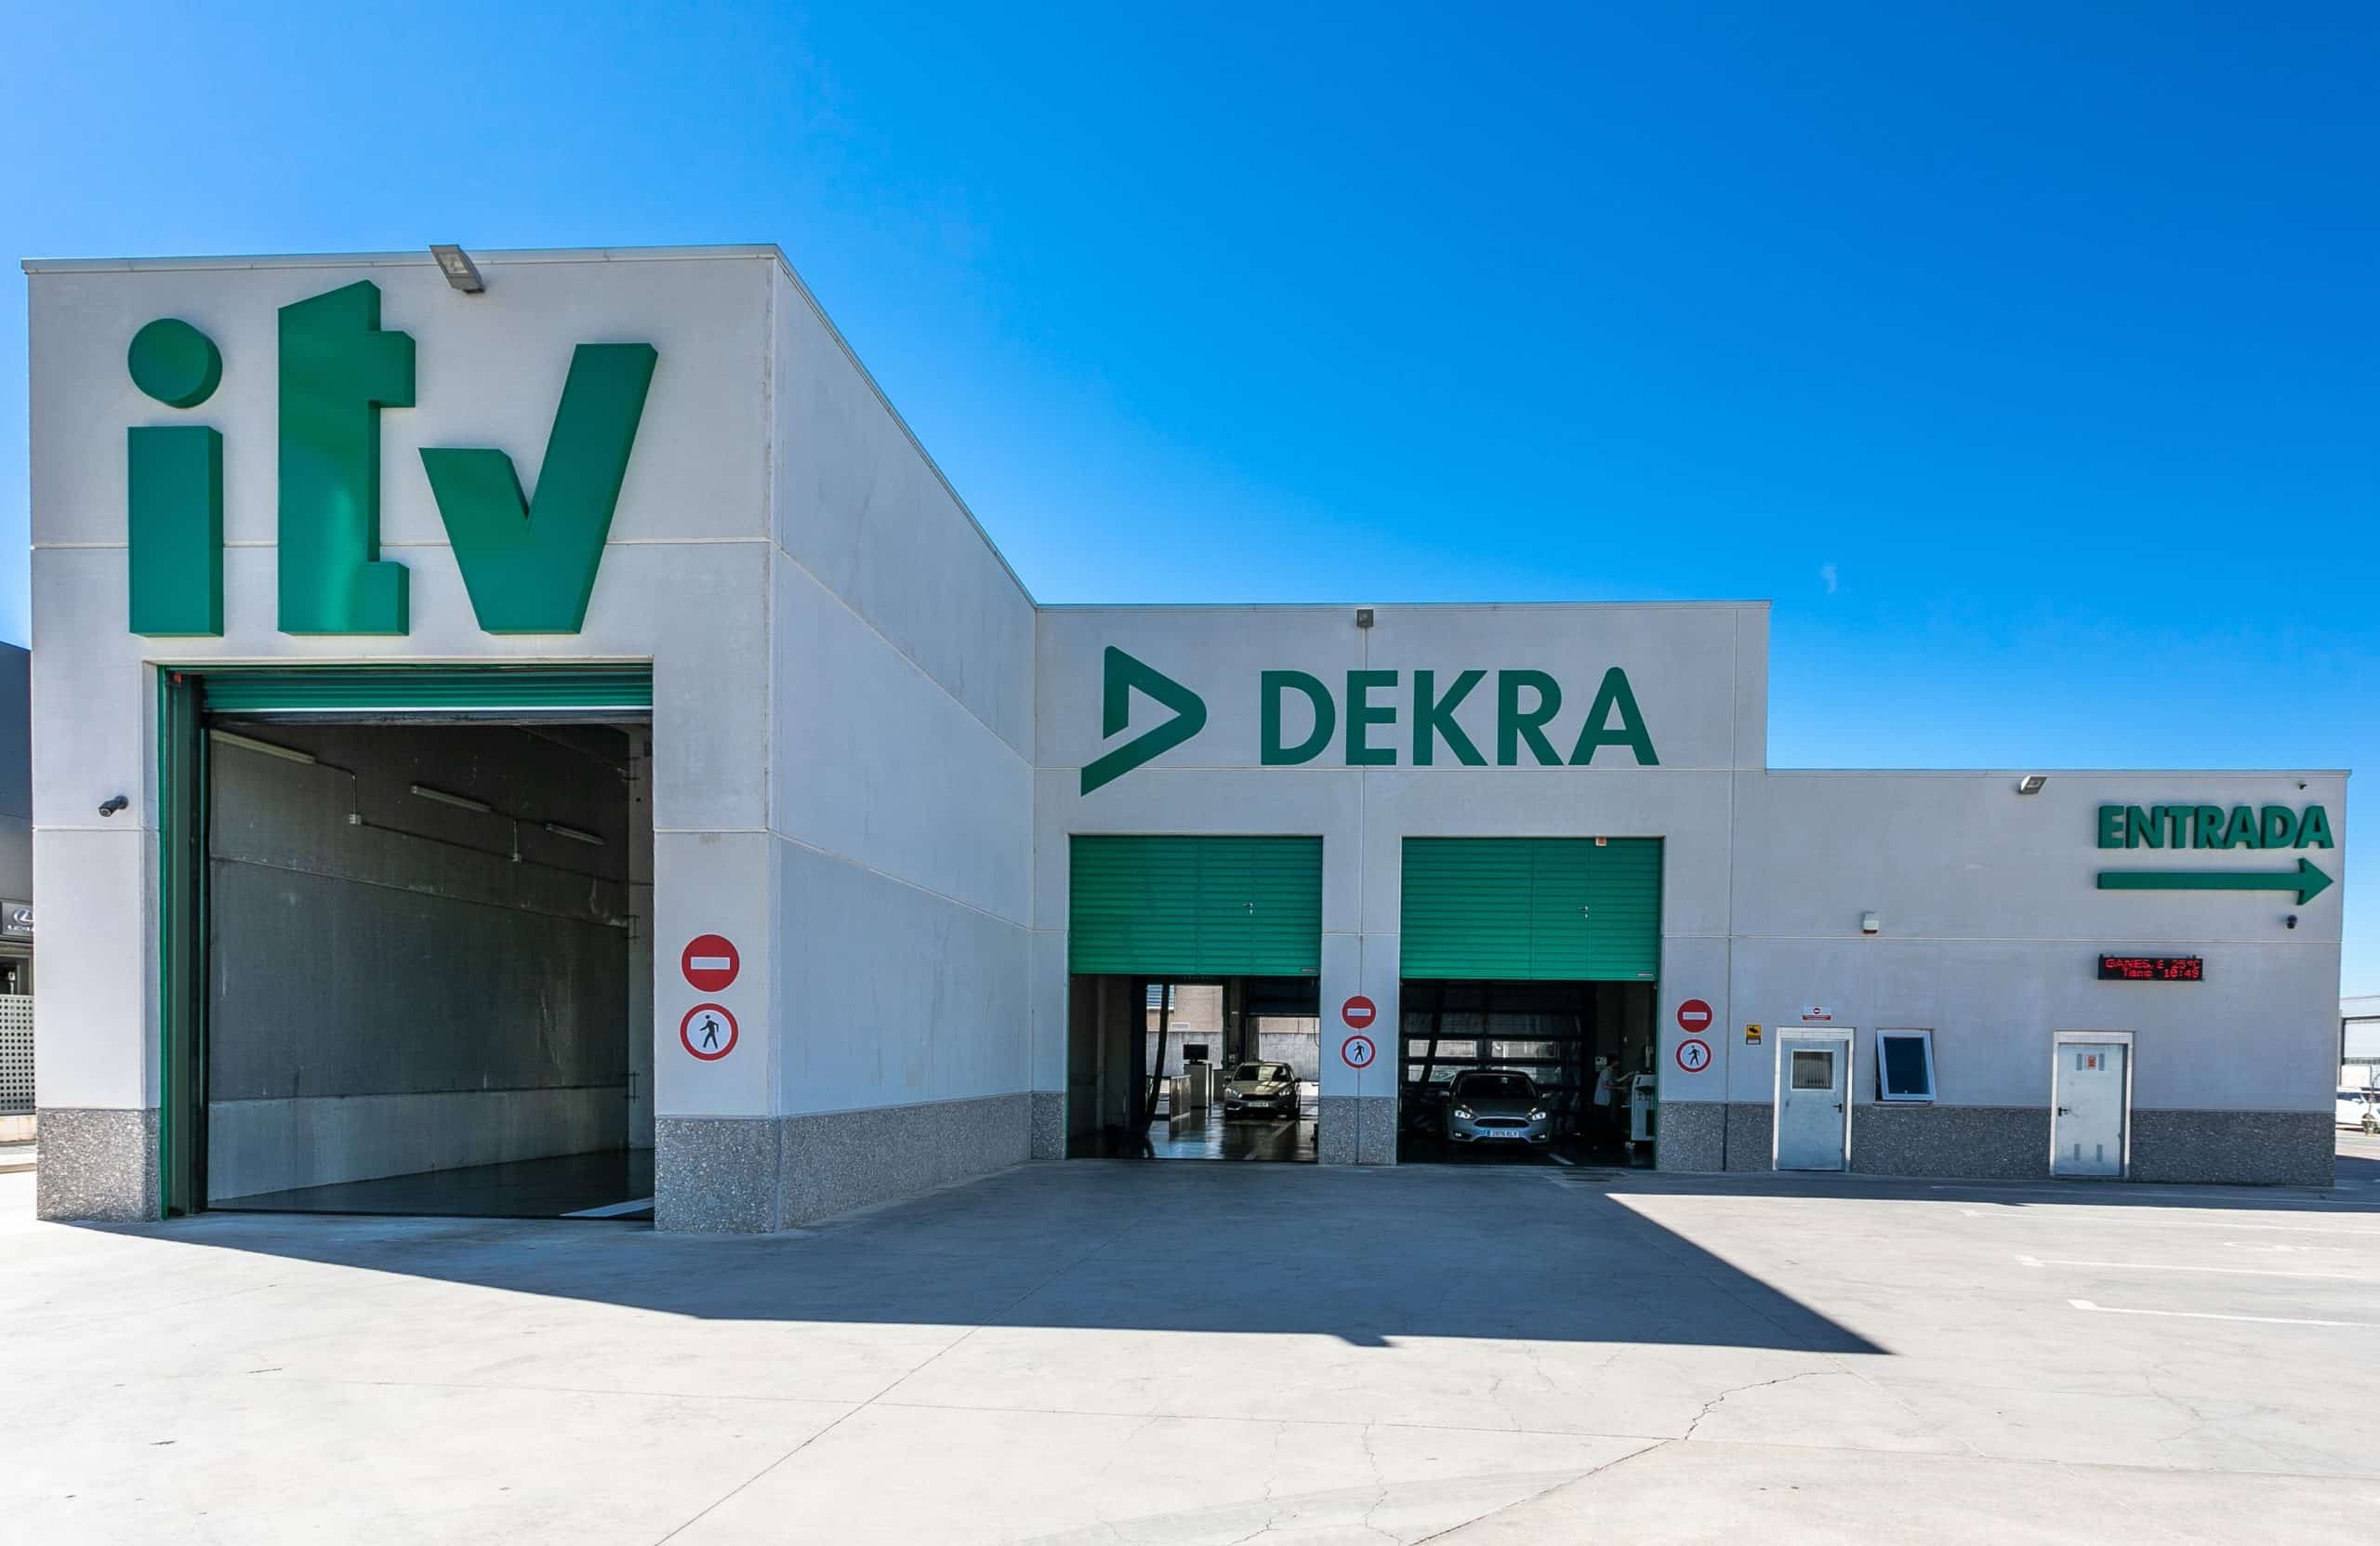 Gobierno defiende discrecionalidad en designación de empresa Dekra para revisión vehicular